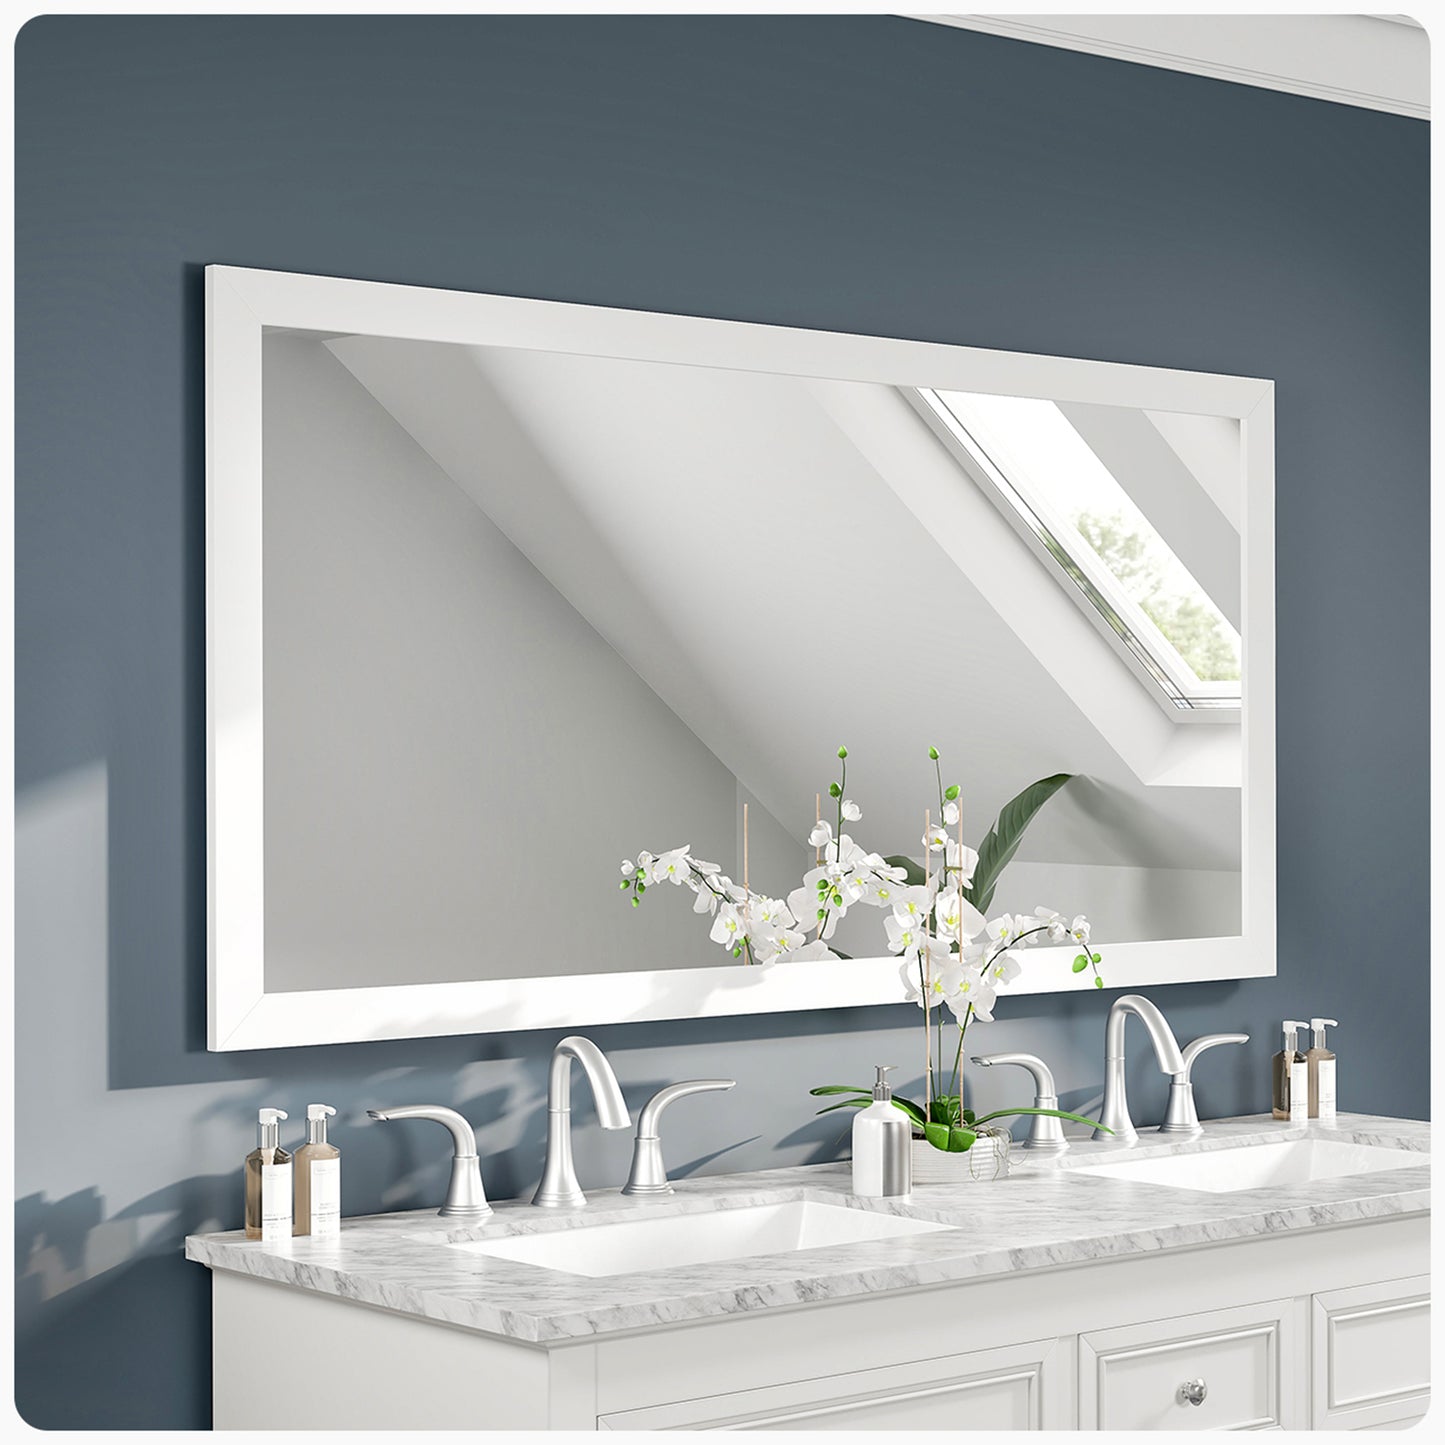 Eviva New York Bathroom Vanity Mirror Full Frame White 60X30 Wall Mount